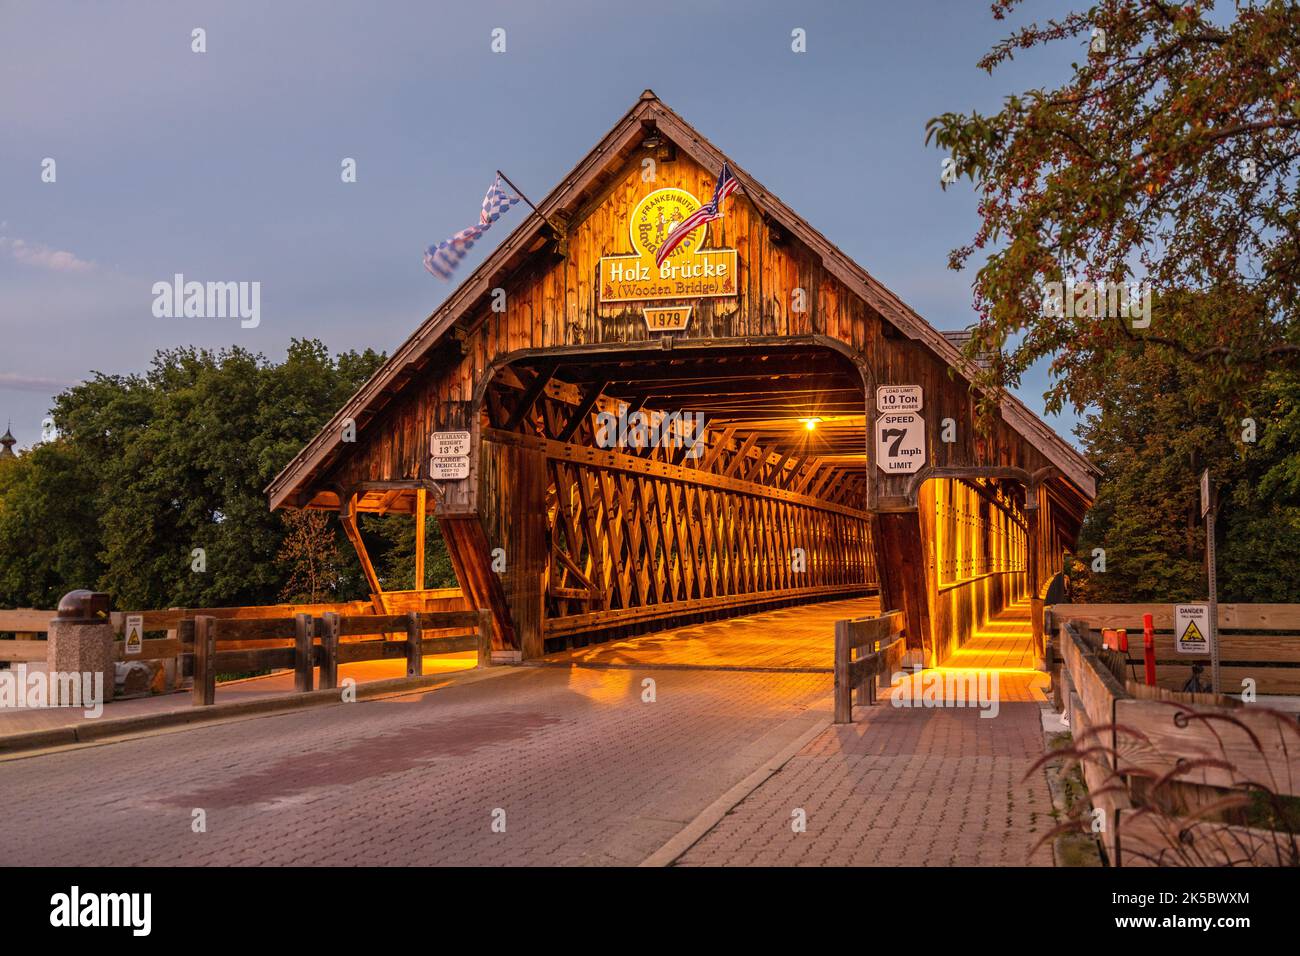 Frankenmuth Puente cubierto de madera por la noche, Holz Brucke Construido por la posada bávara cruzando el río Cass en la ciudad bávara de frankenmuth en Mich Foto de stock